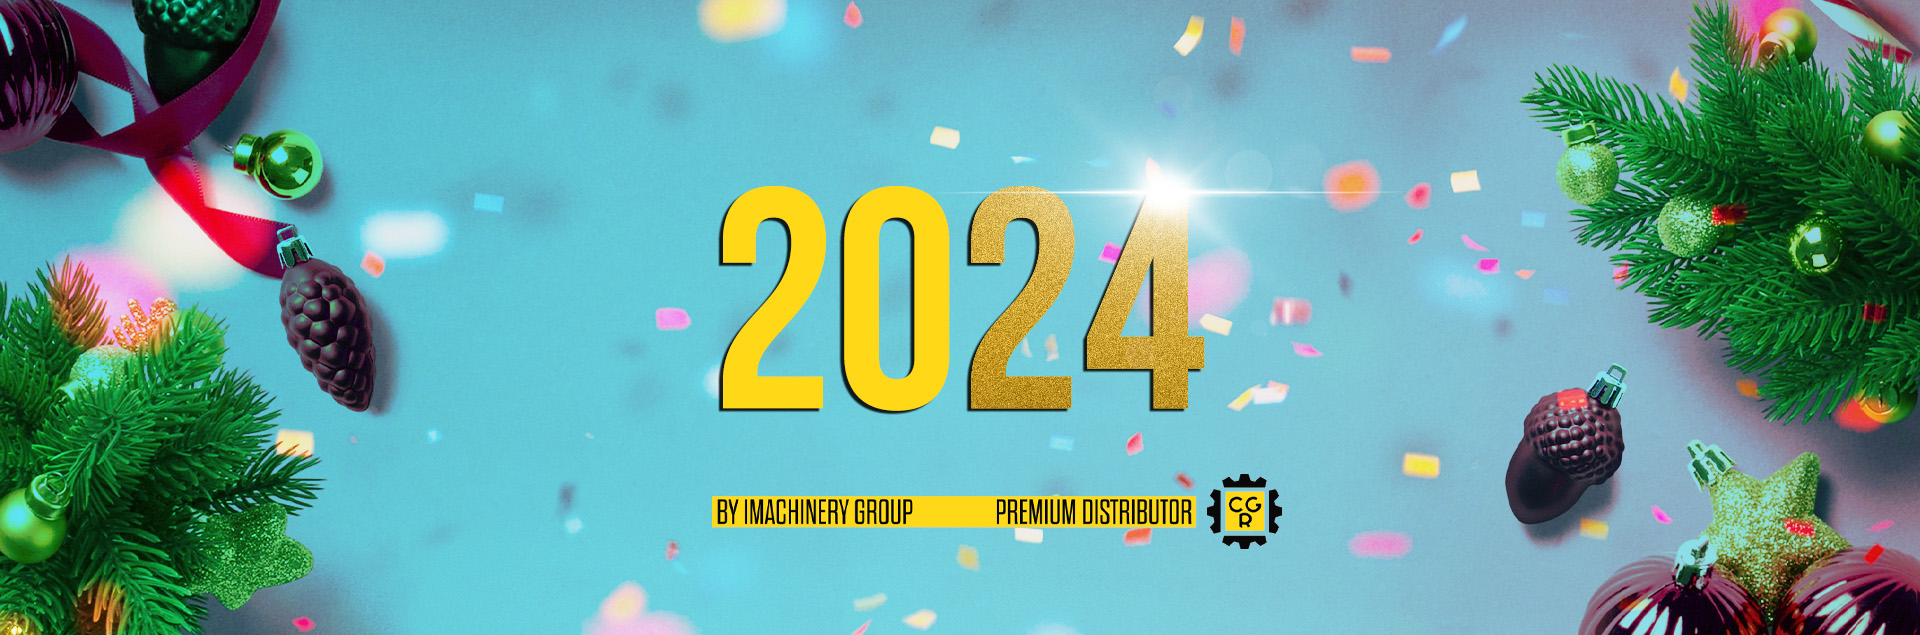 С Новым 2024 годом!